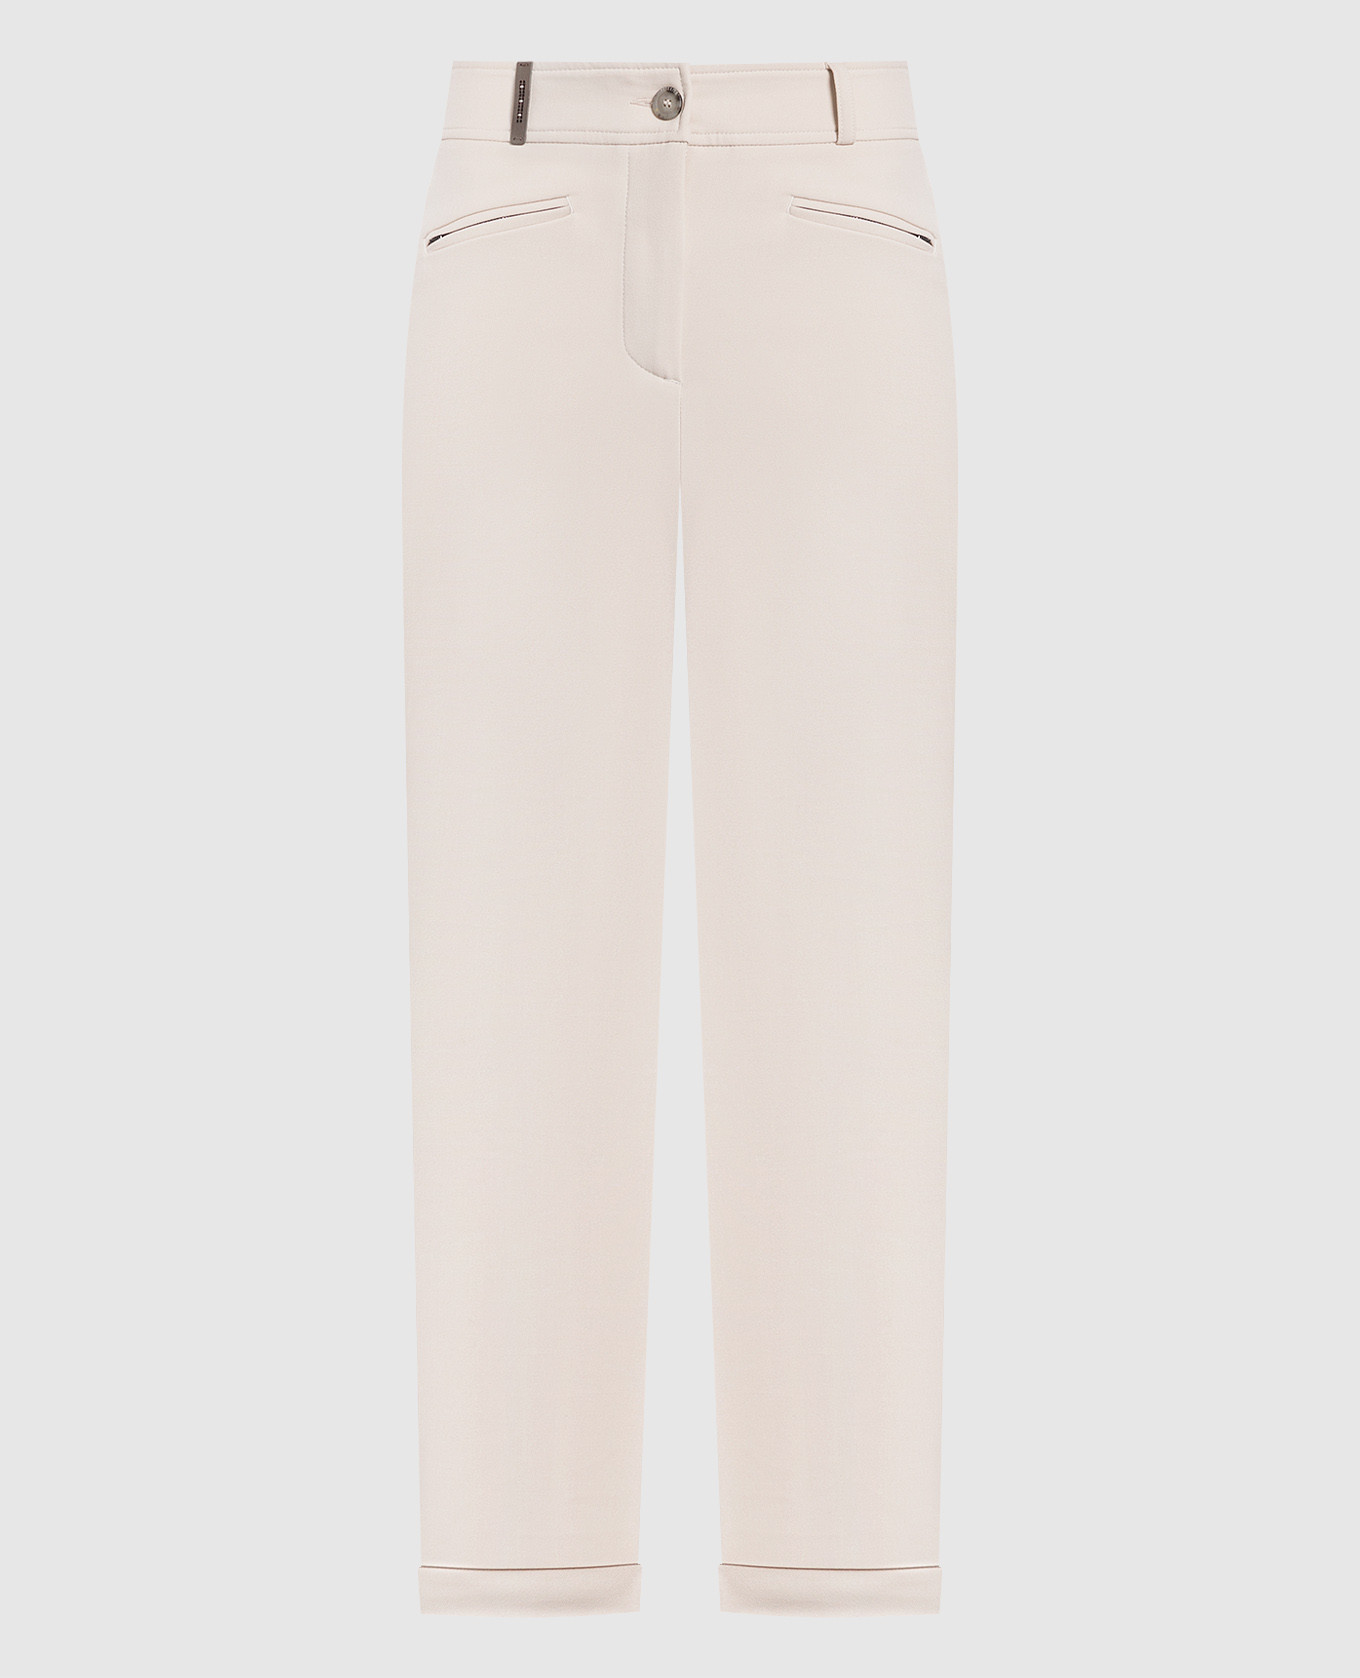 Light beige pants with lapels